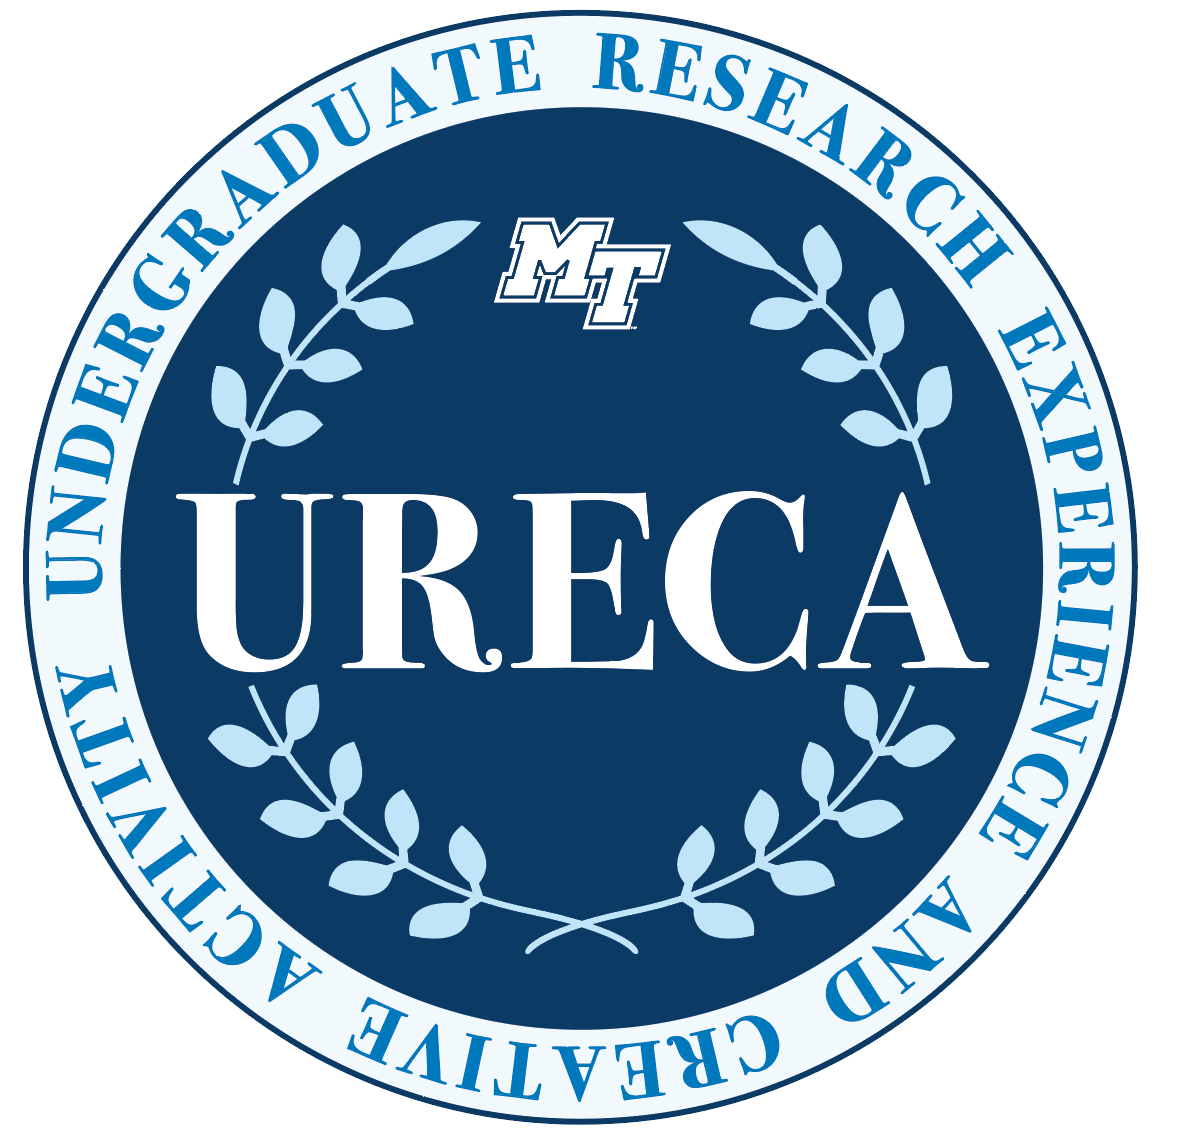 URECA logo